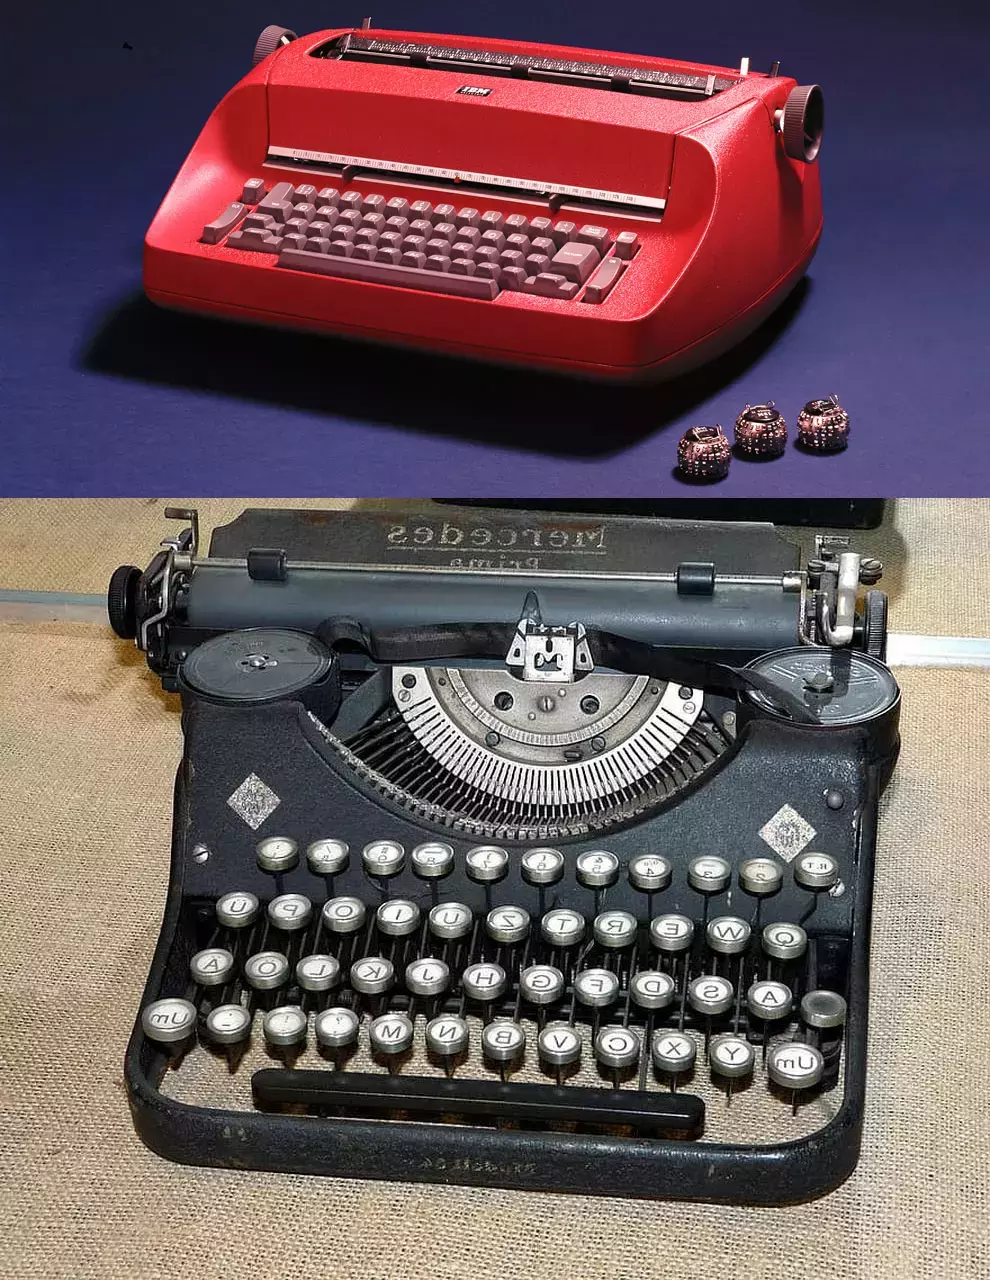 Machine à écrire IBM Selectric comparée à une machine à écrire mécanique utilisée dans les ambassades soviétiques.